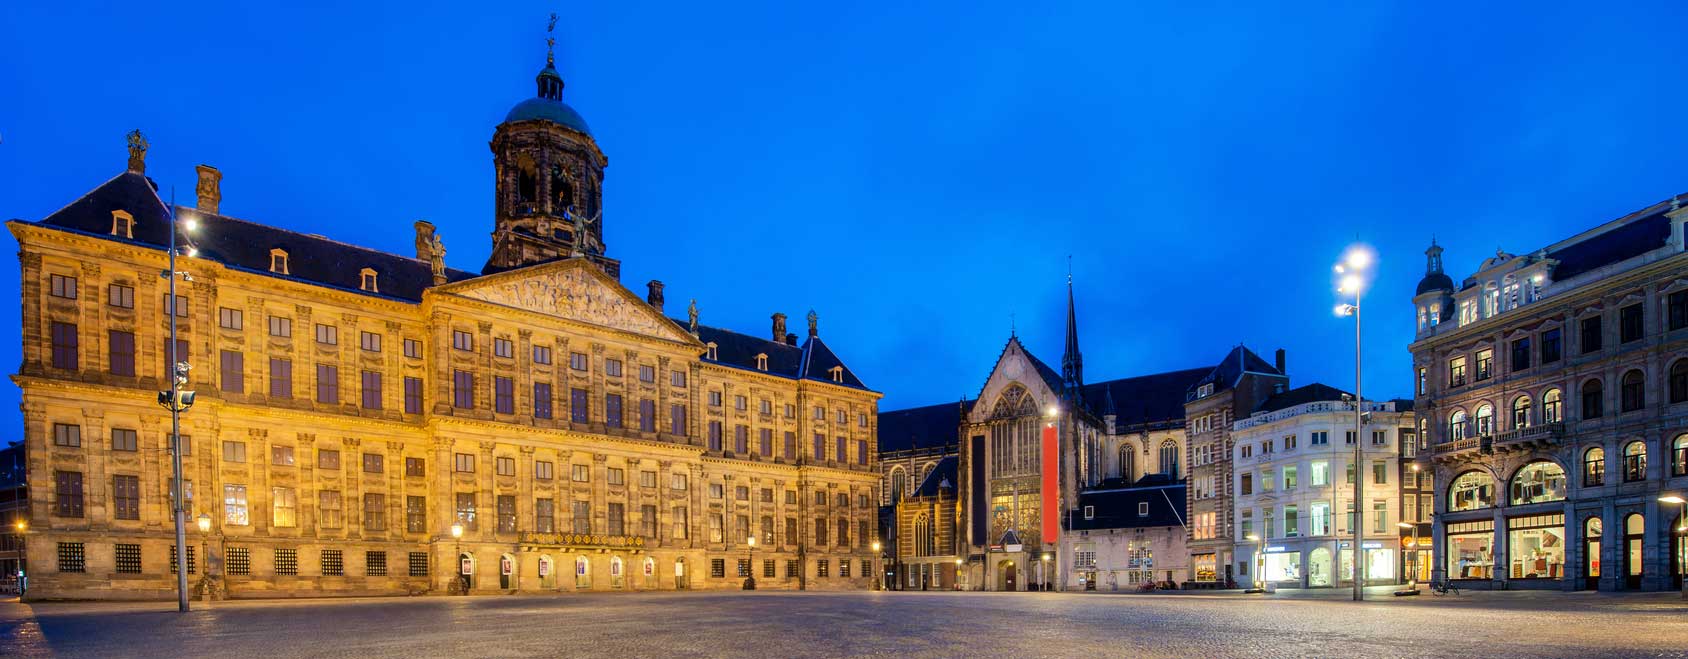 Der Königliche Palast auf dem Dam, dem größten zentrale Platz mitten in der Altstadt von Amsterdam. Der Dam unterbricht die beliebte Fußgängerzone, die nördlich des Palastes als Nieuwendijk und südlich davon als Kalverstraat verläuft